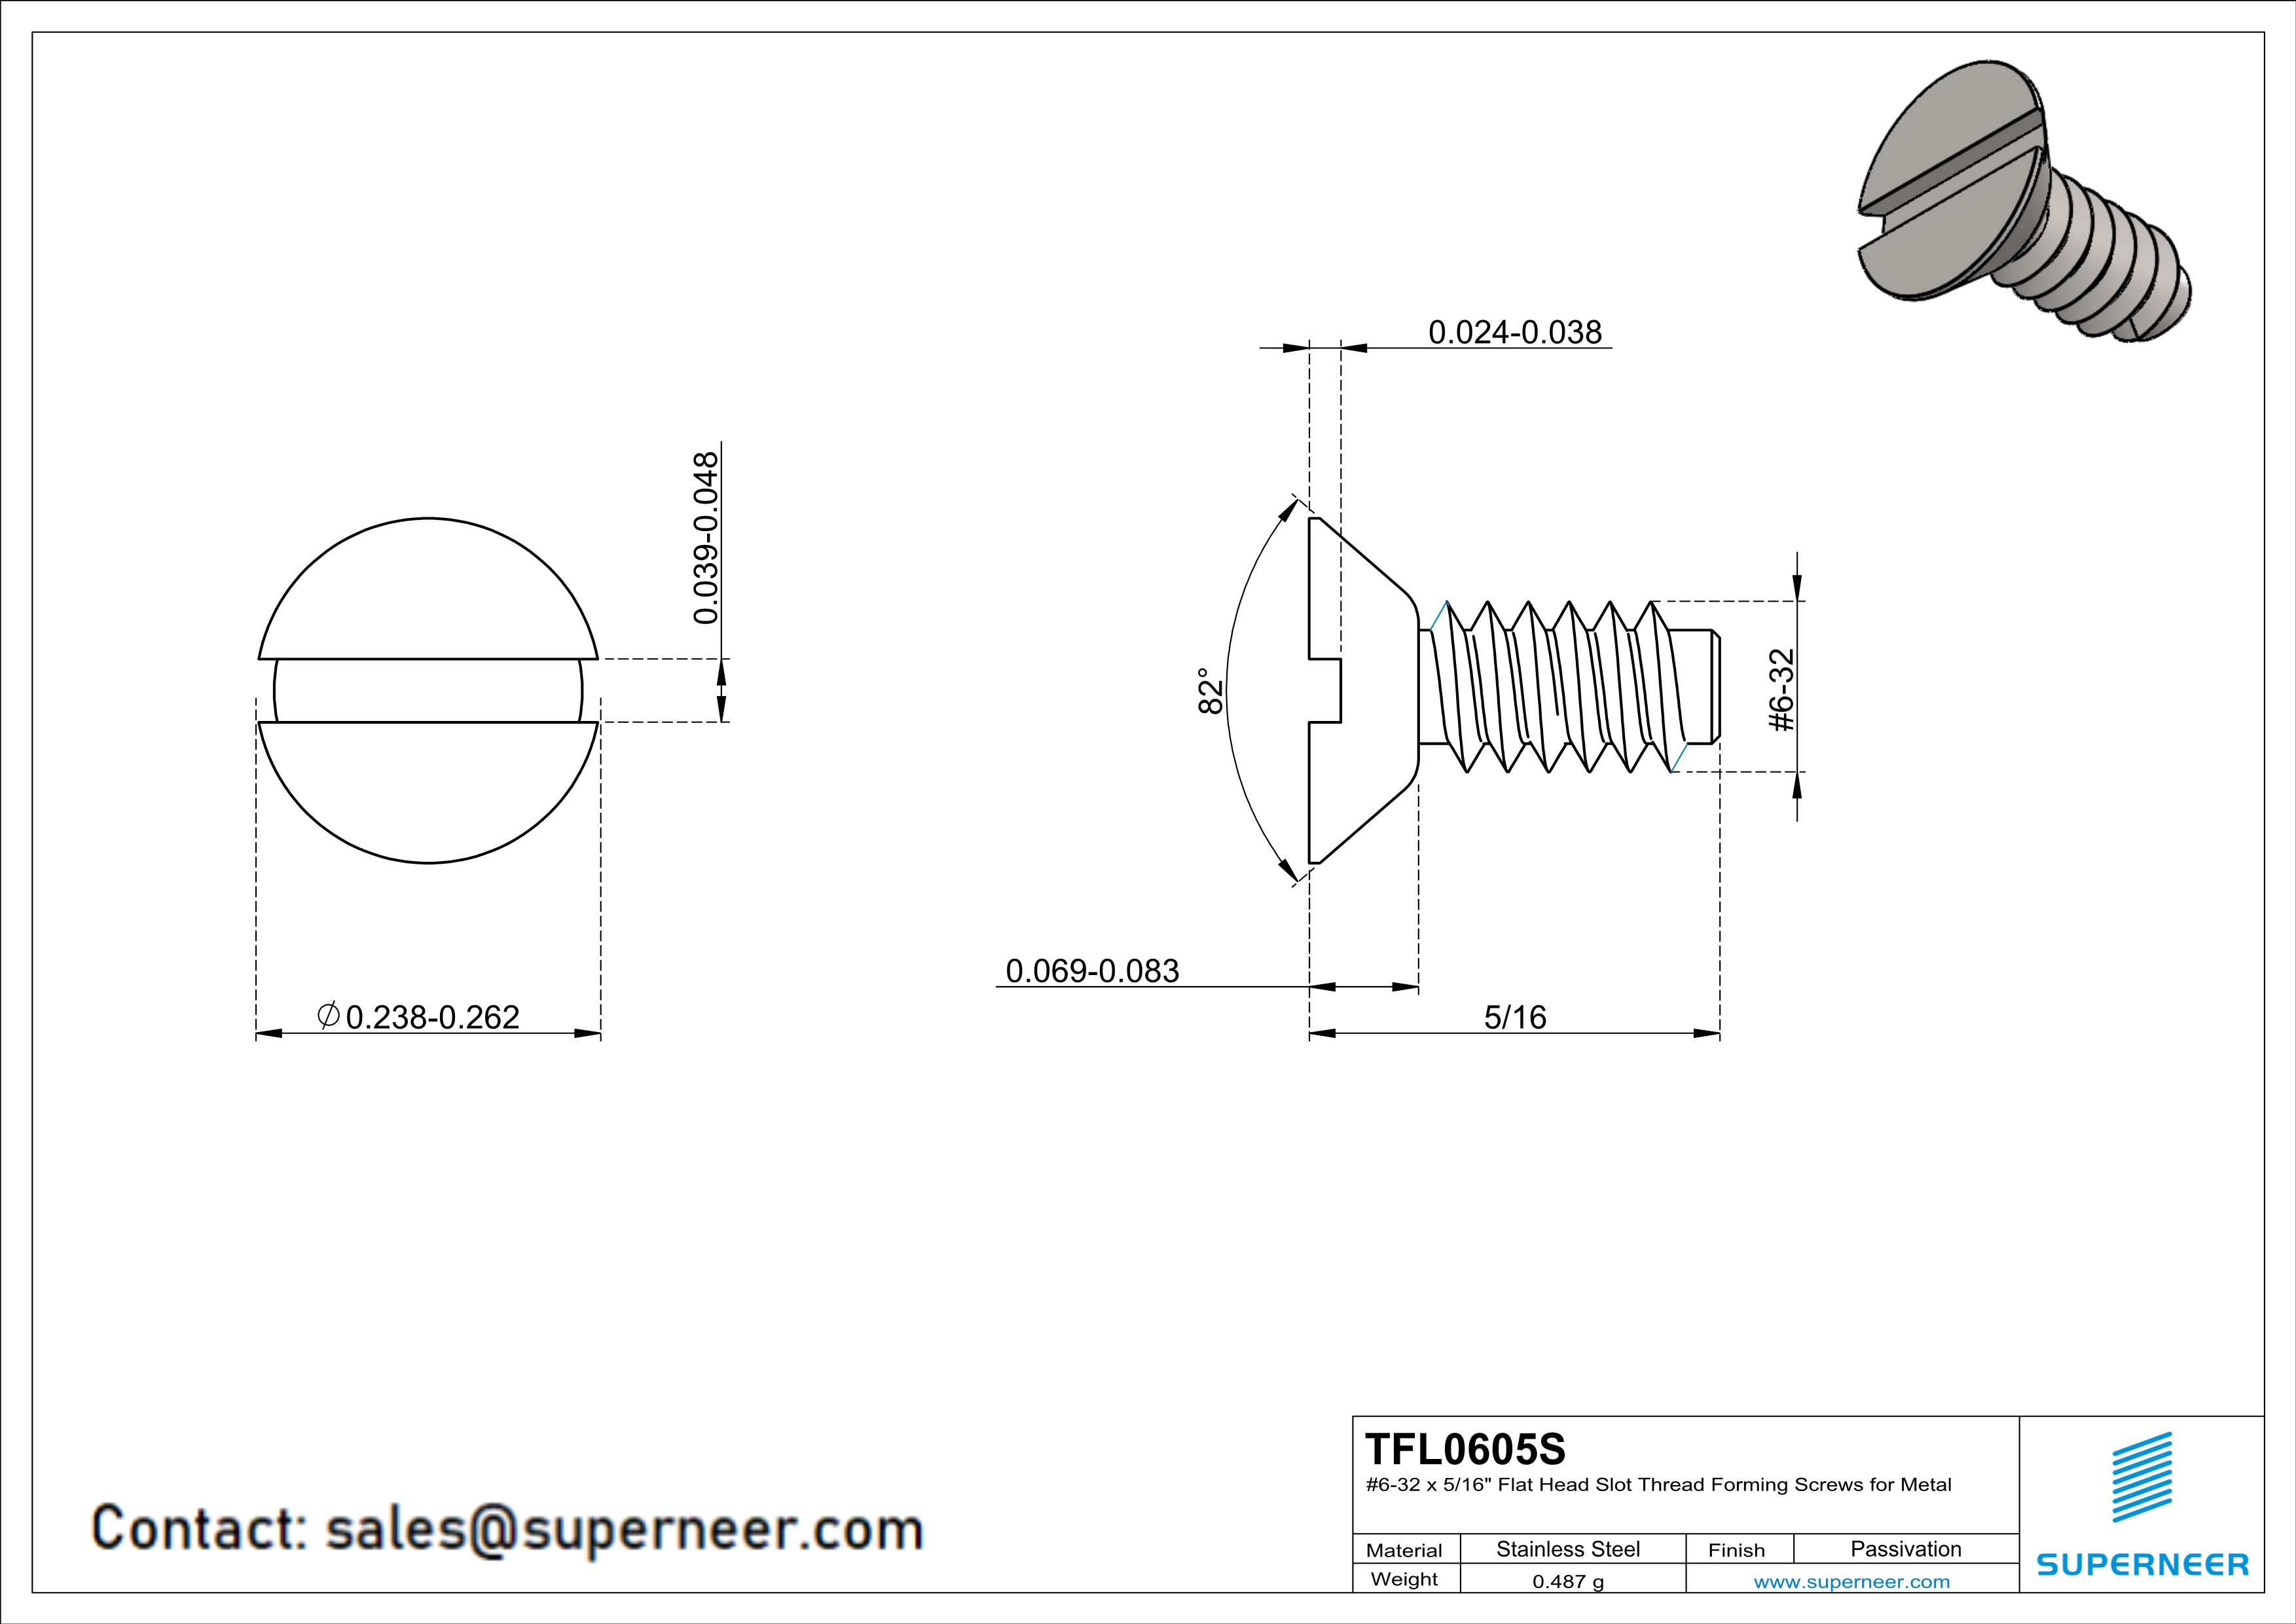 6-32 × 5/16 Flat Head Slot Thread Forming  Screws for Metal  SUS304 Stainless Steel Inox